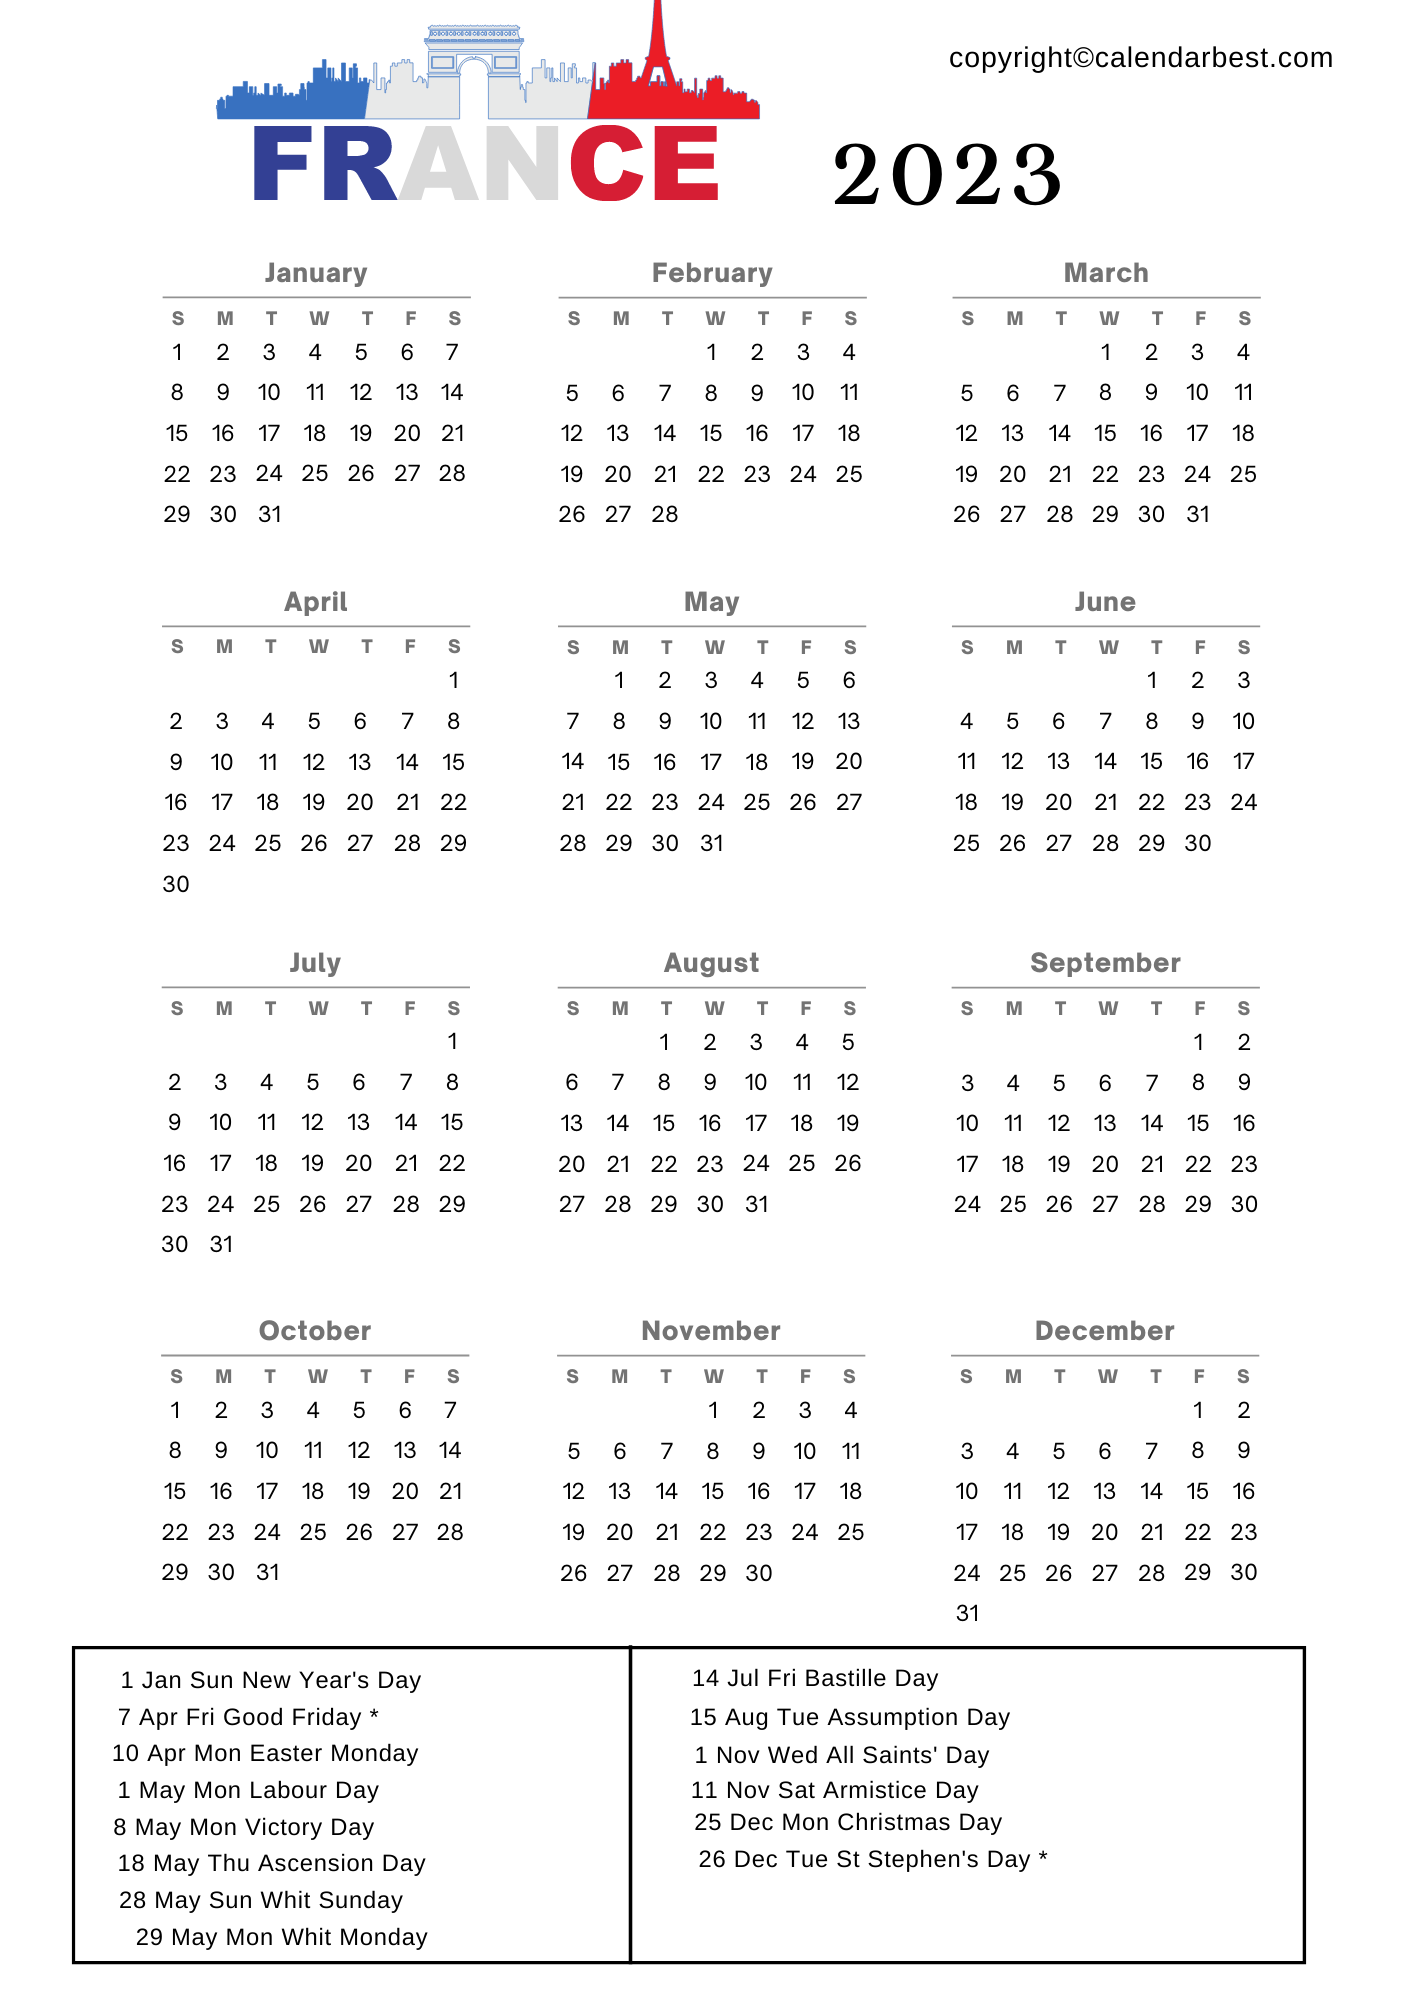 France Holidays 2023 2023 Calendar PELAJARAN